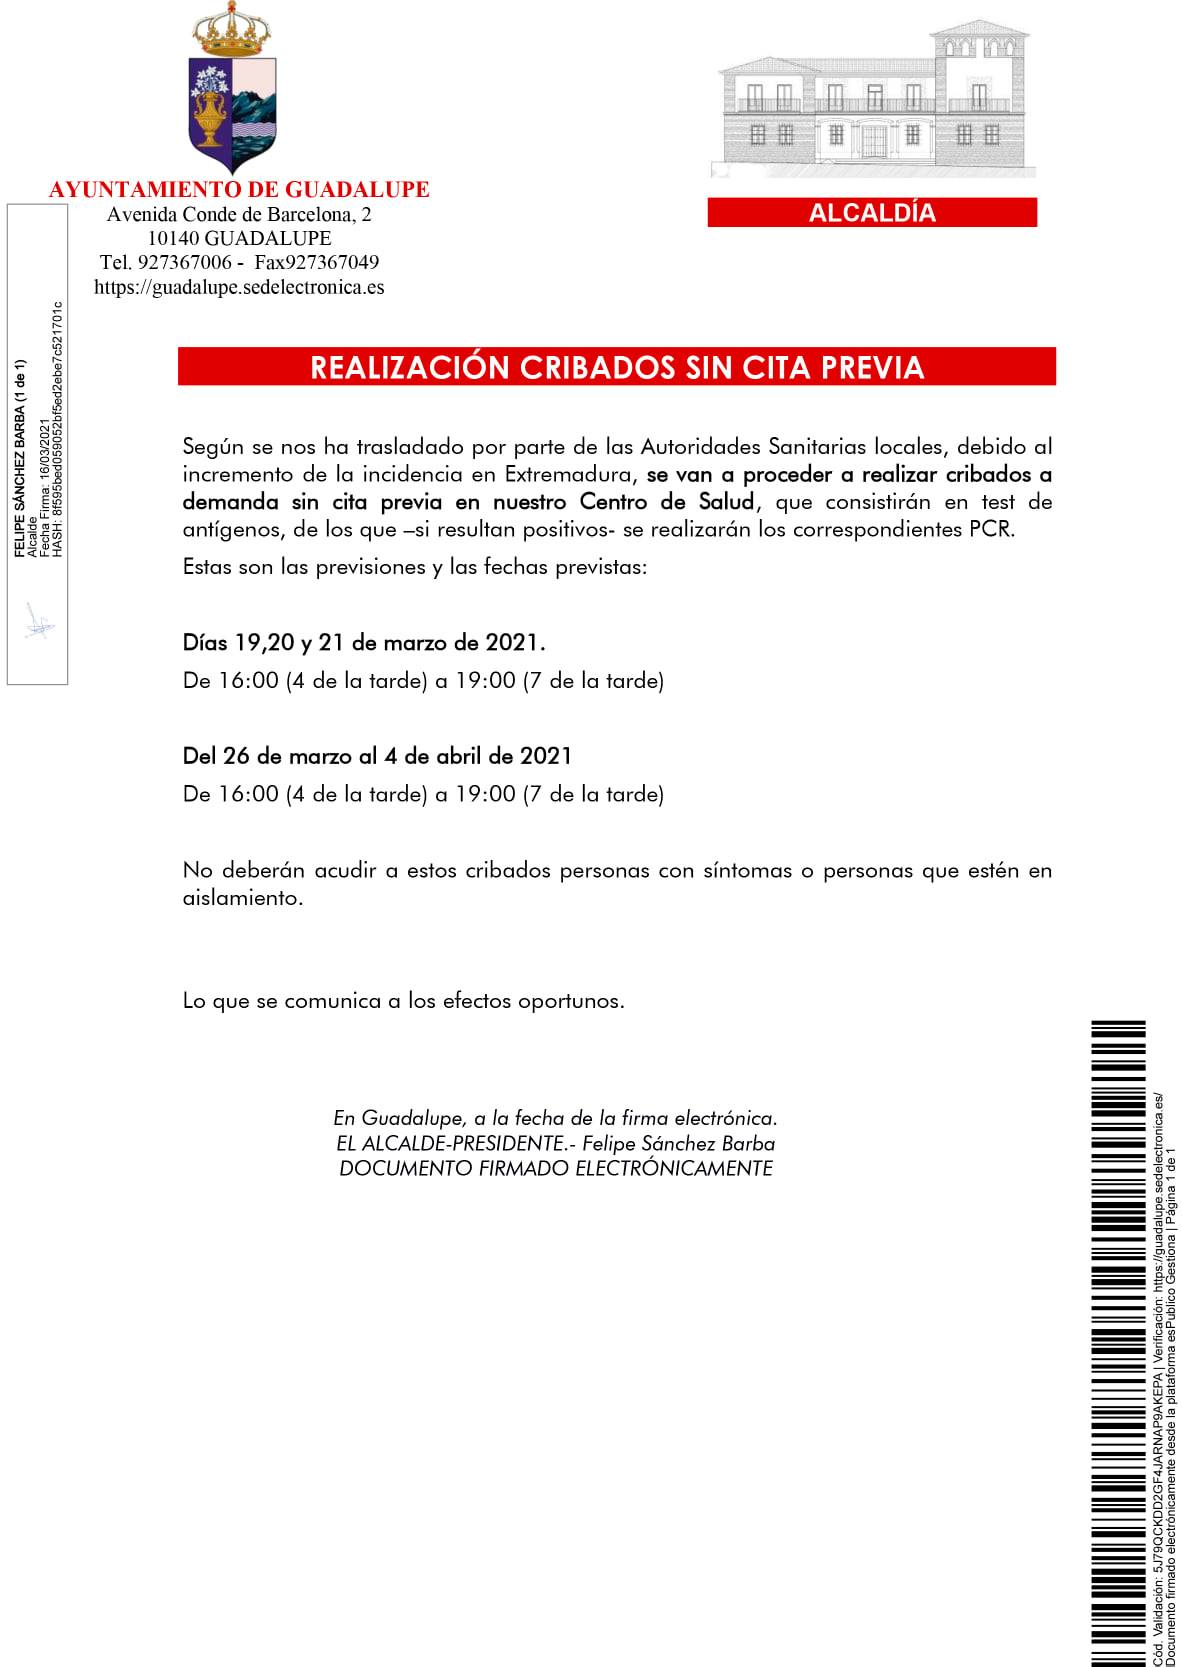 Realización de cribados de COVID-19 (marzo y abril 2021) - Guadalupe (Cáceres)